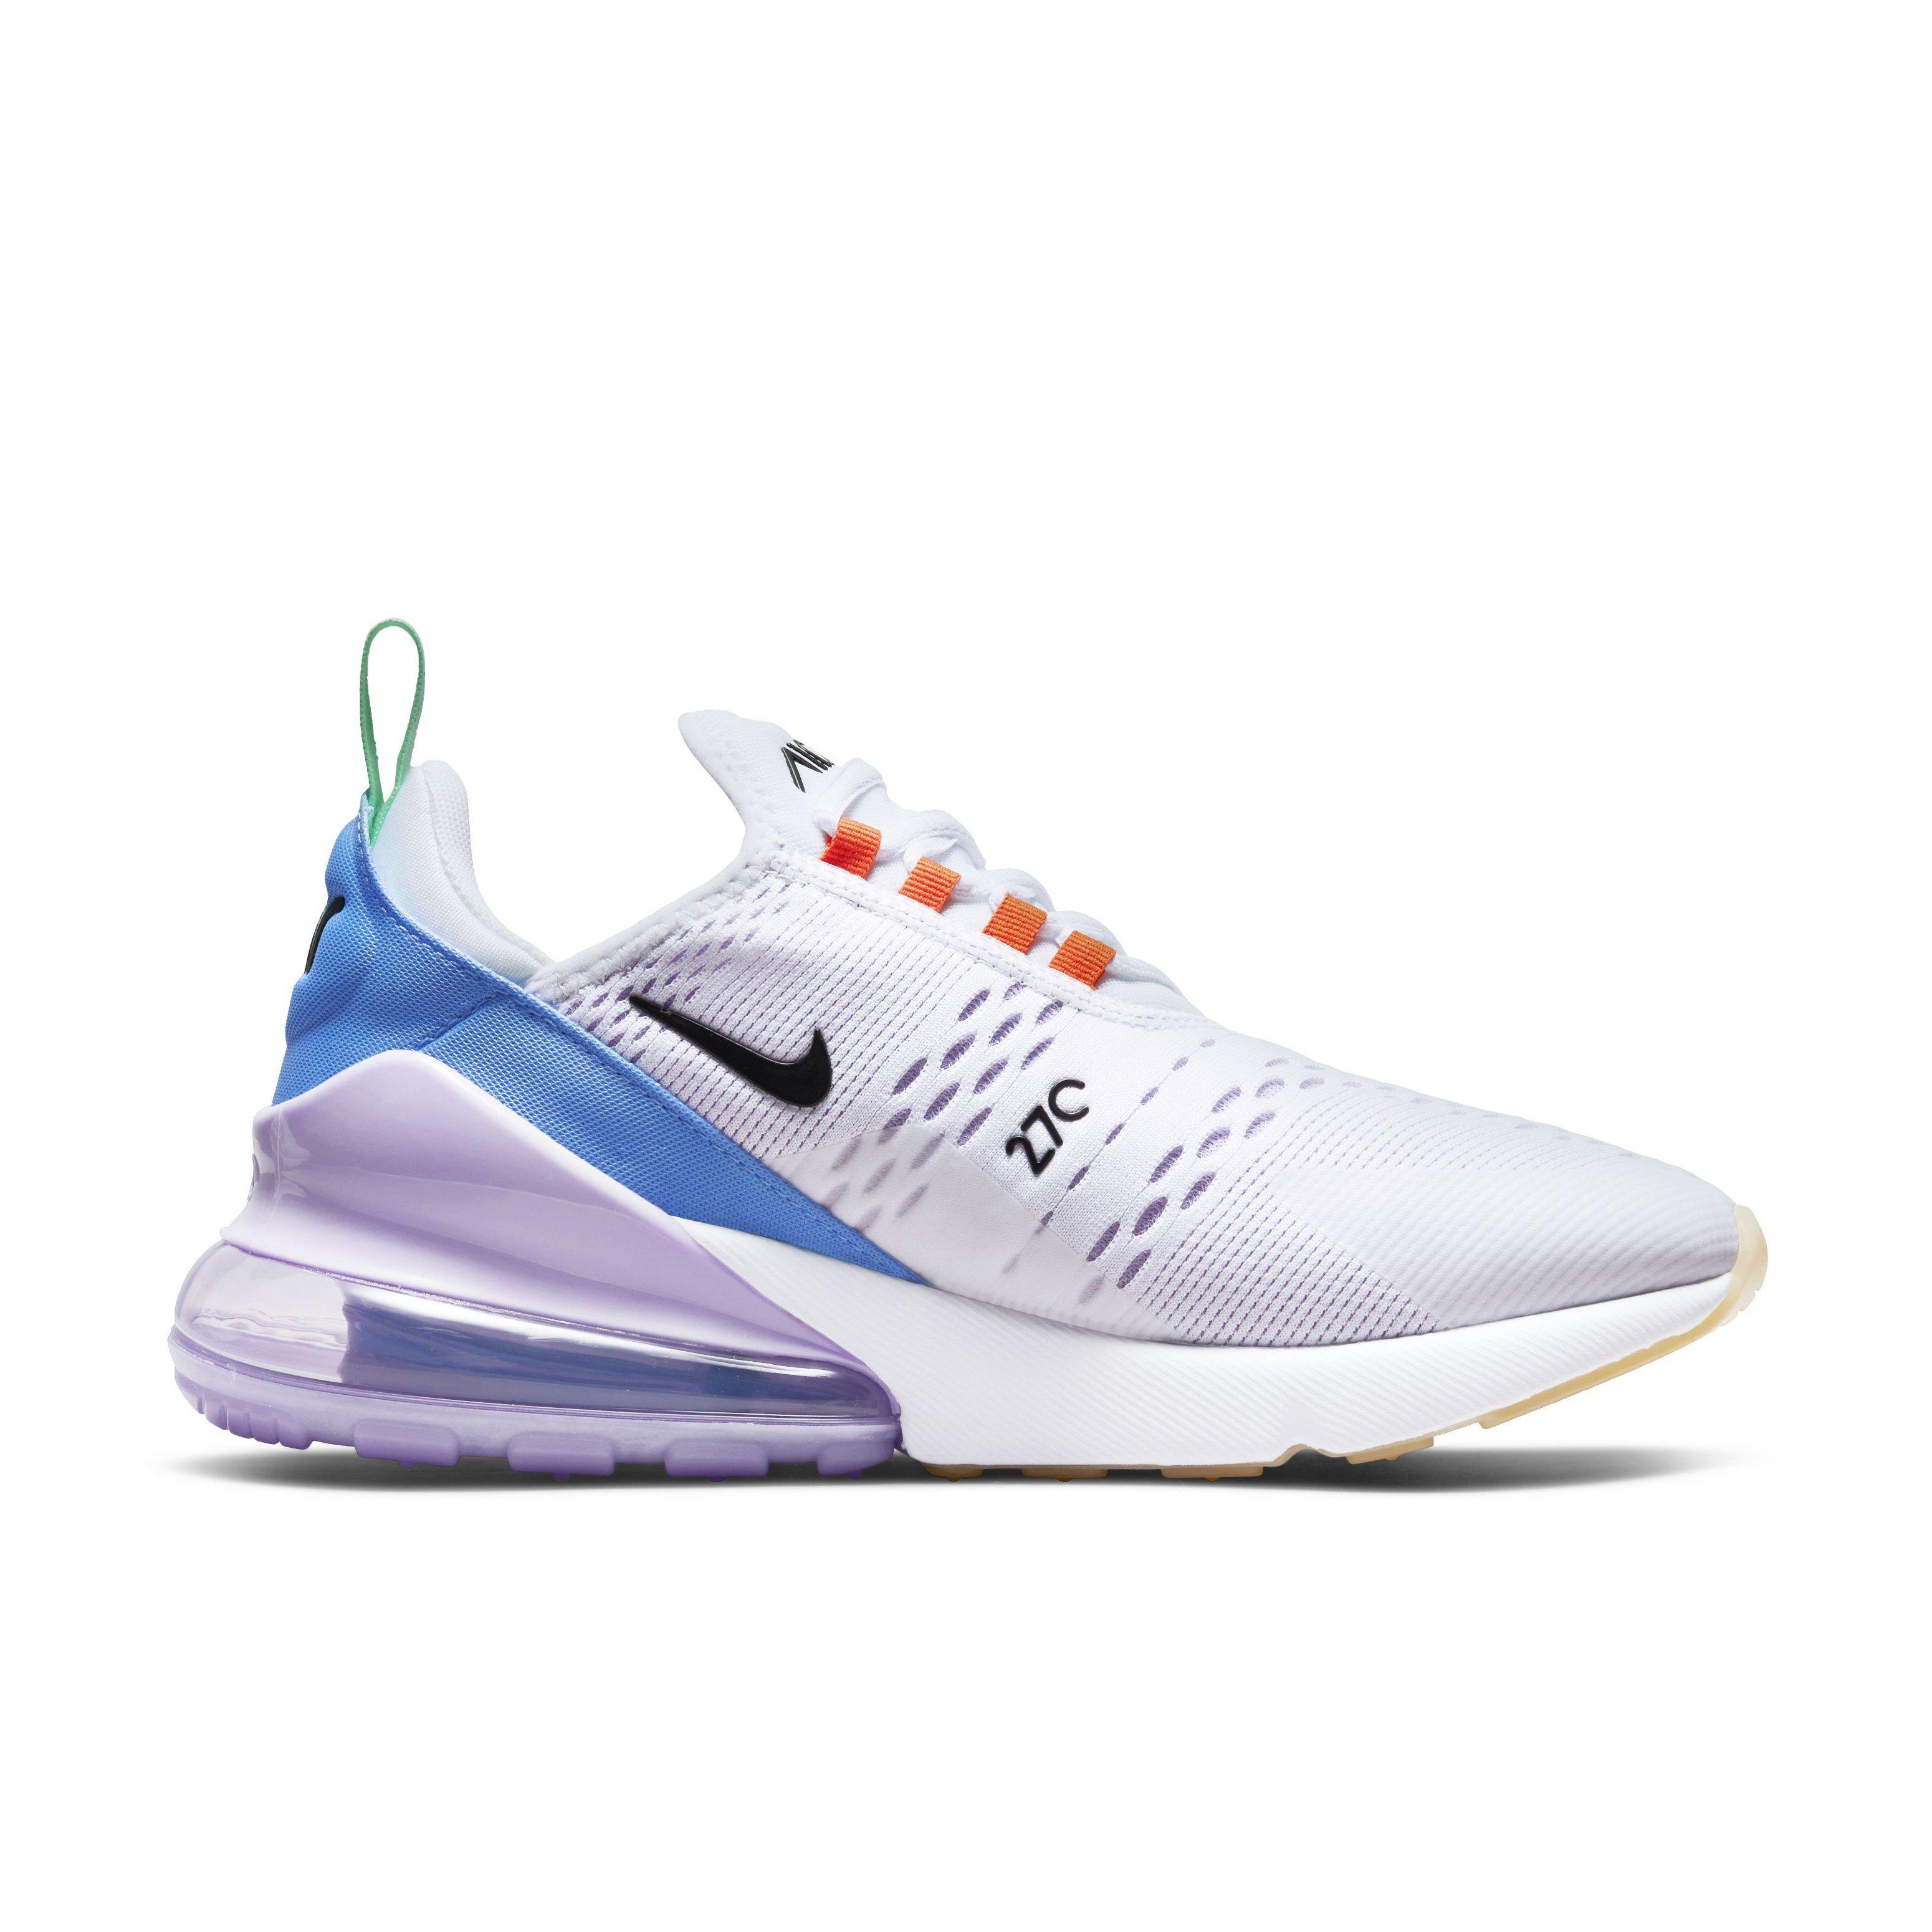 Nike 270 "White/Lilac/Safety Orange" Shoe